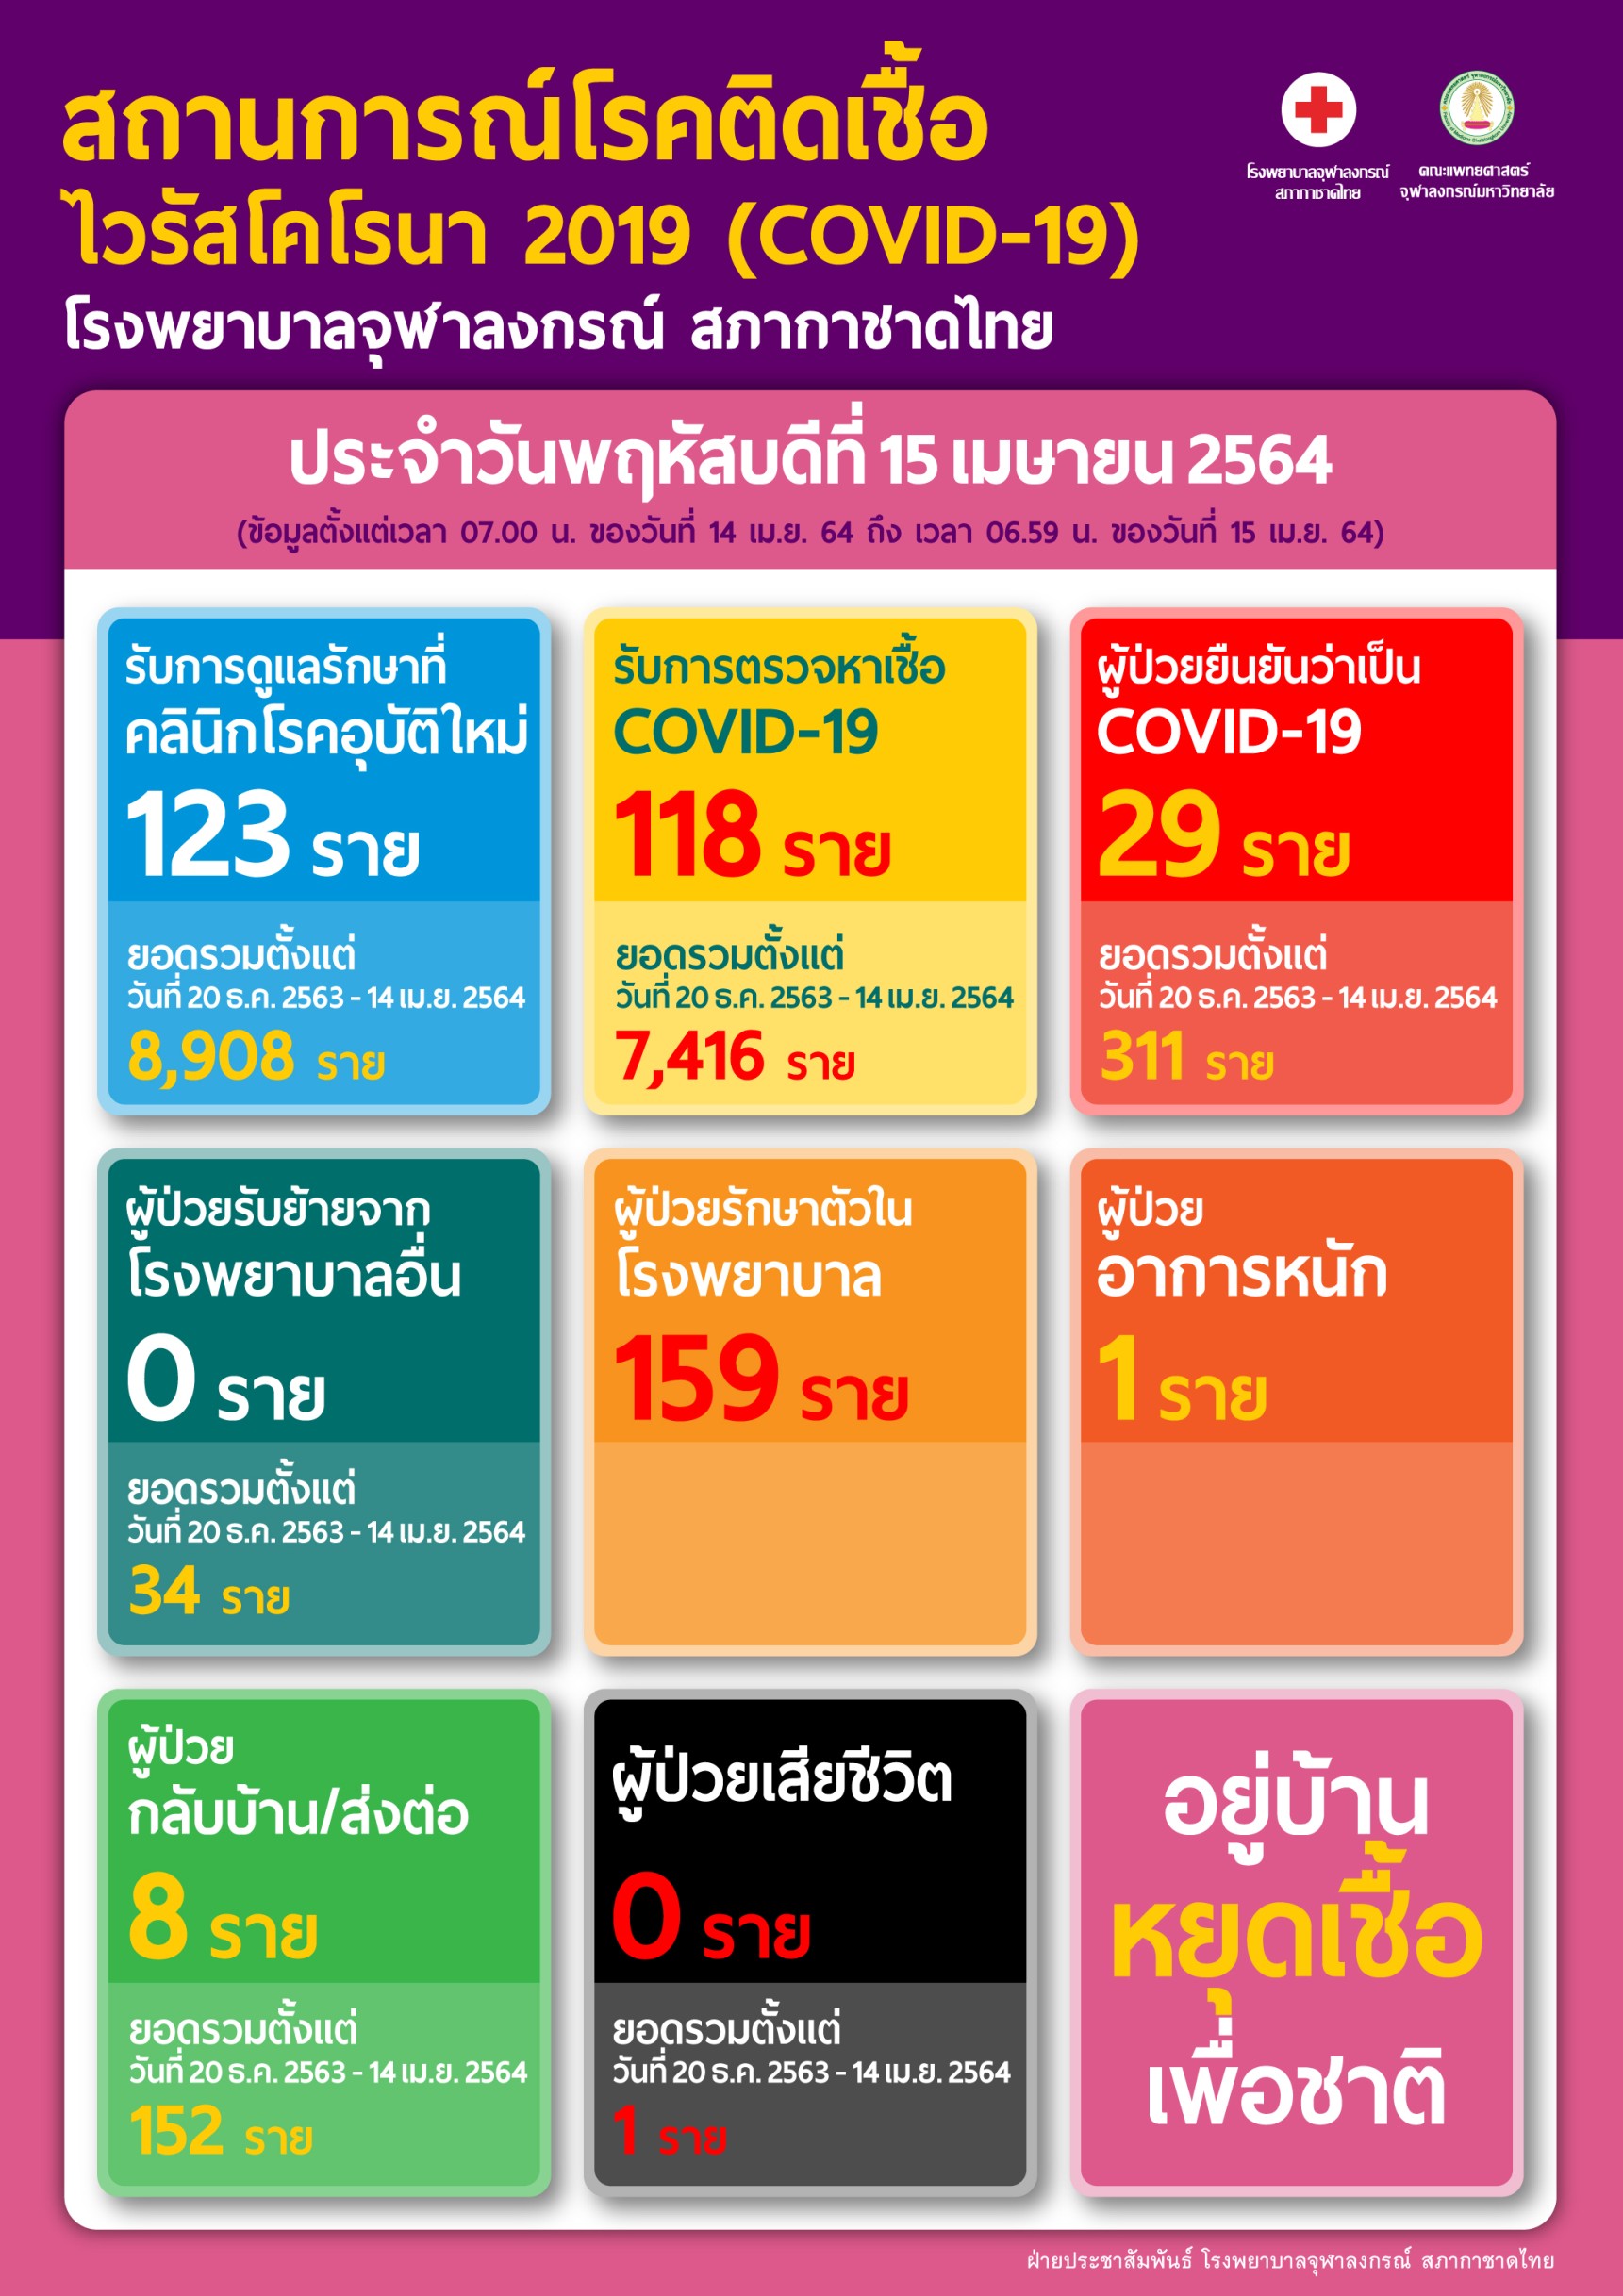 สถานการณ์โรคติดเชื้อ ไวรัสโคโรนา 2019 (COVID-19) โรงพยาบาลจุฬาลงกรณ์ สภากาชาดไทย ประจำวันพฤหัสบดีที่ 15 เมษายน 2564